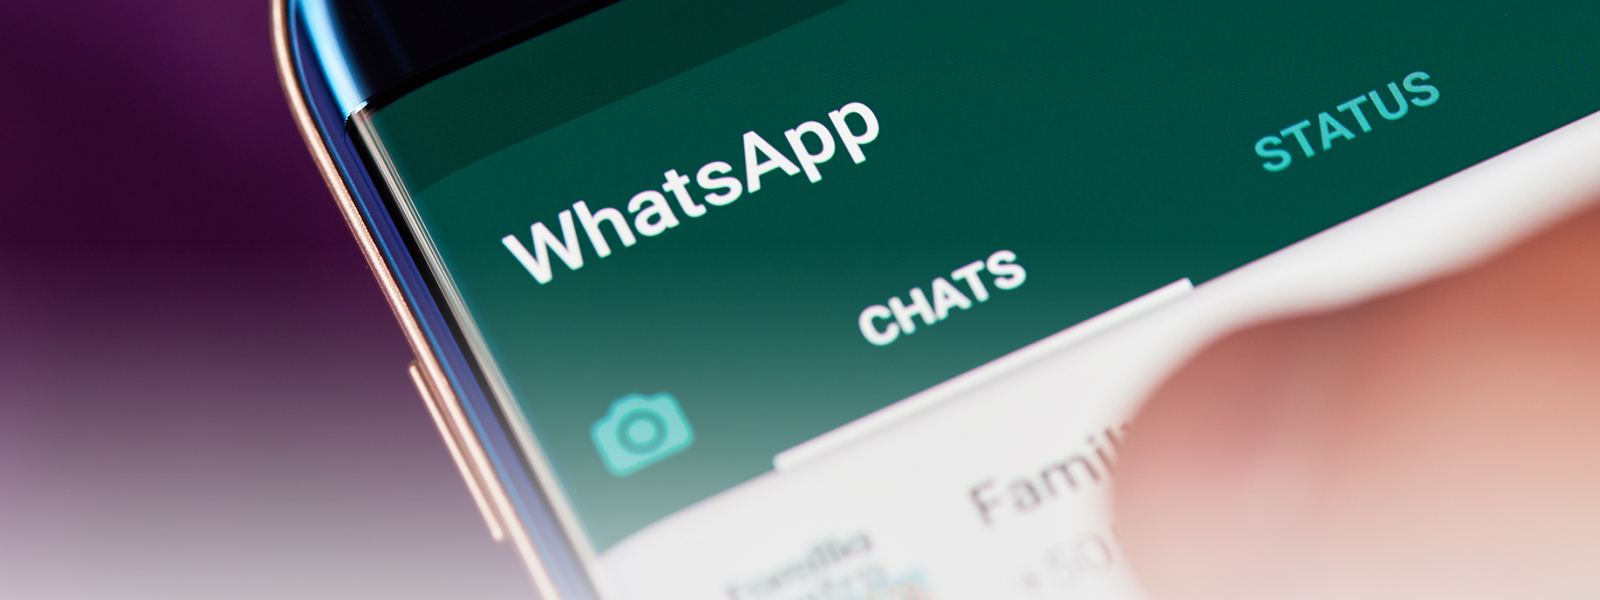 Журнал/Эксперты призывают не пользоваться WhatsApp: что не так?